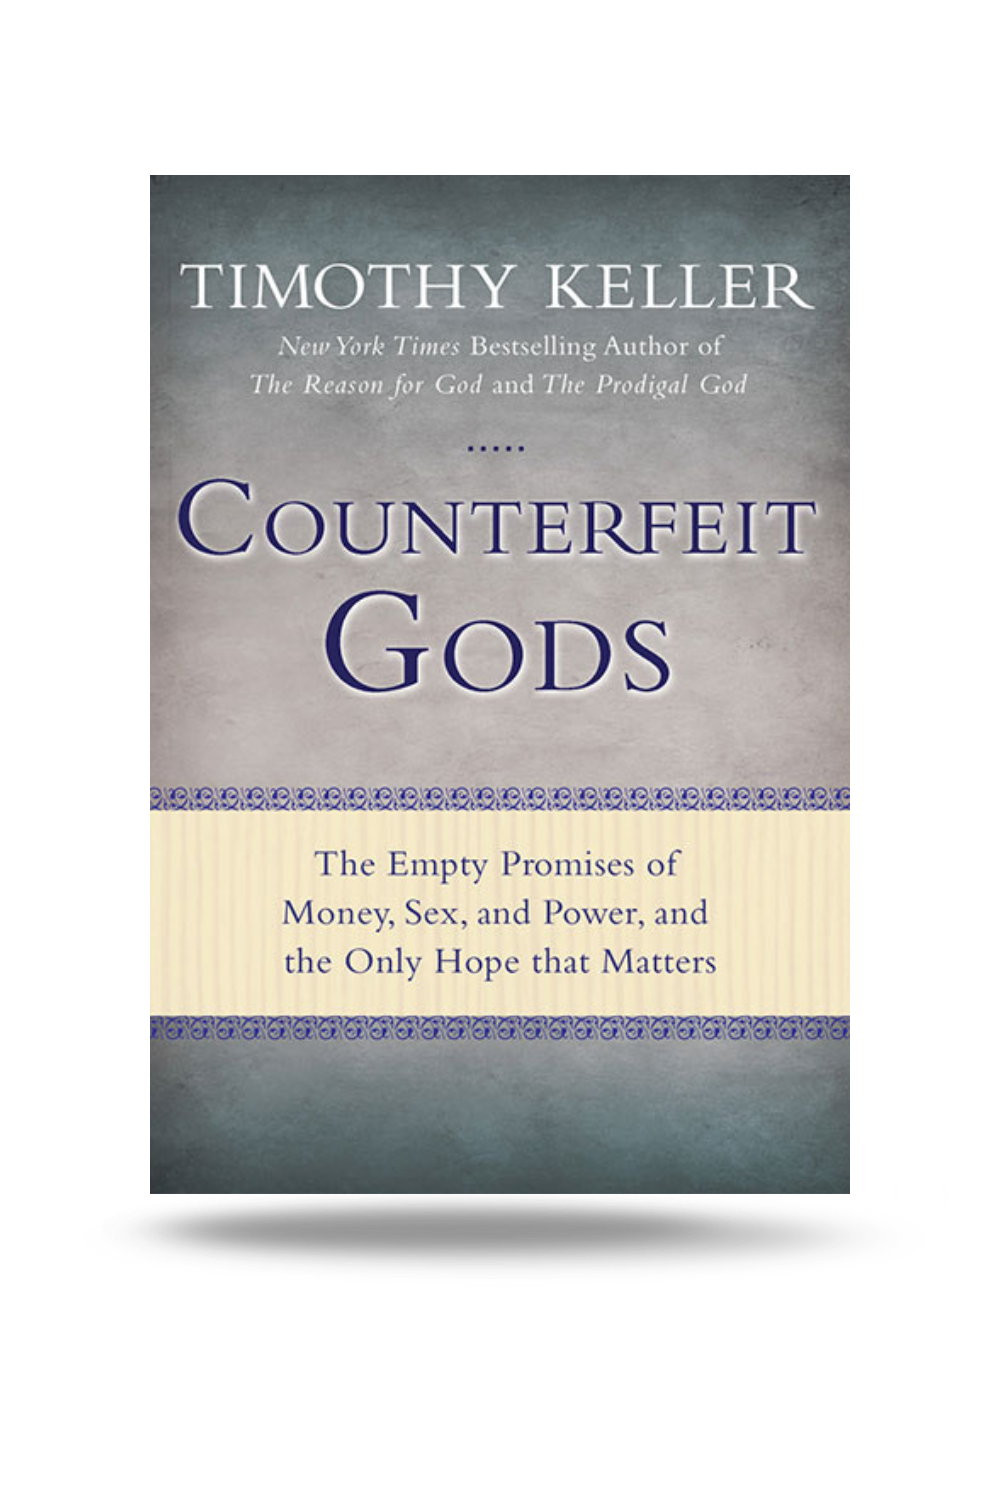 Counterfeit-Gods-Image